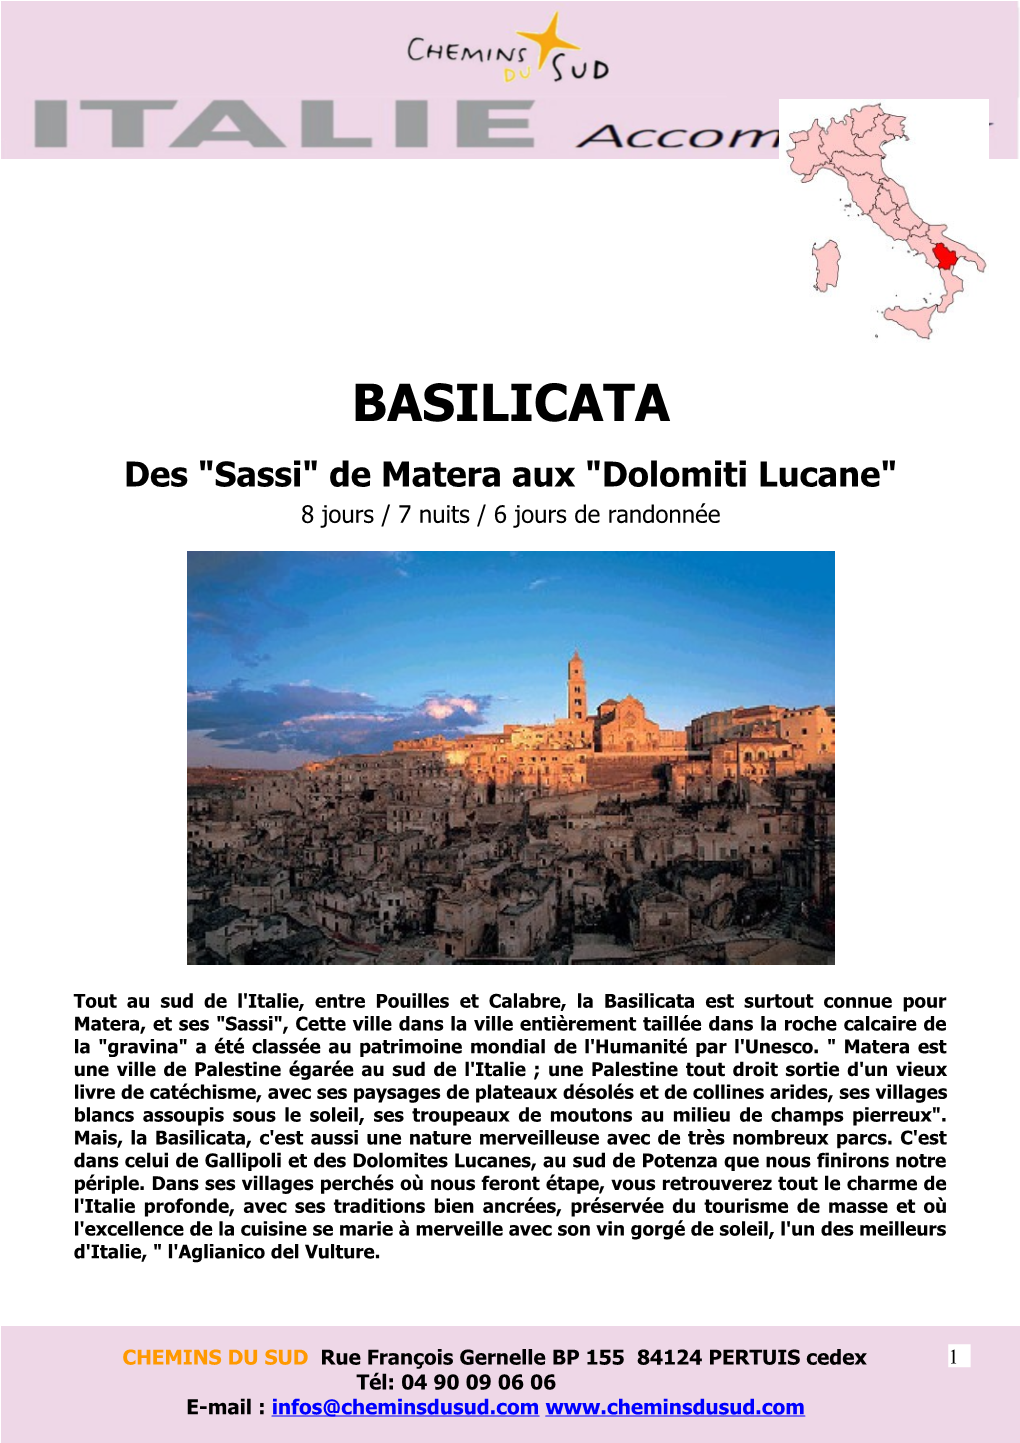 BASILICATA Des "Sassi" De Matera Aux "Dolomiti Lucane" 8 Jours / 7 Nuits / 6 Jours De Randonnée